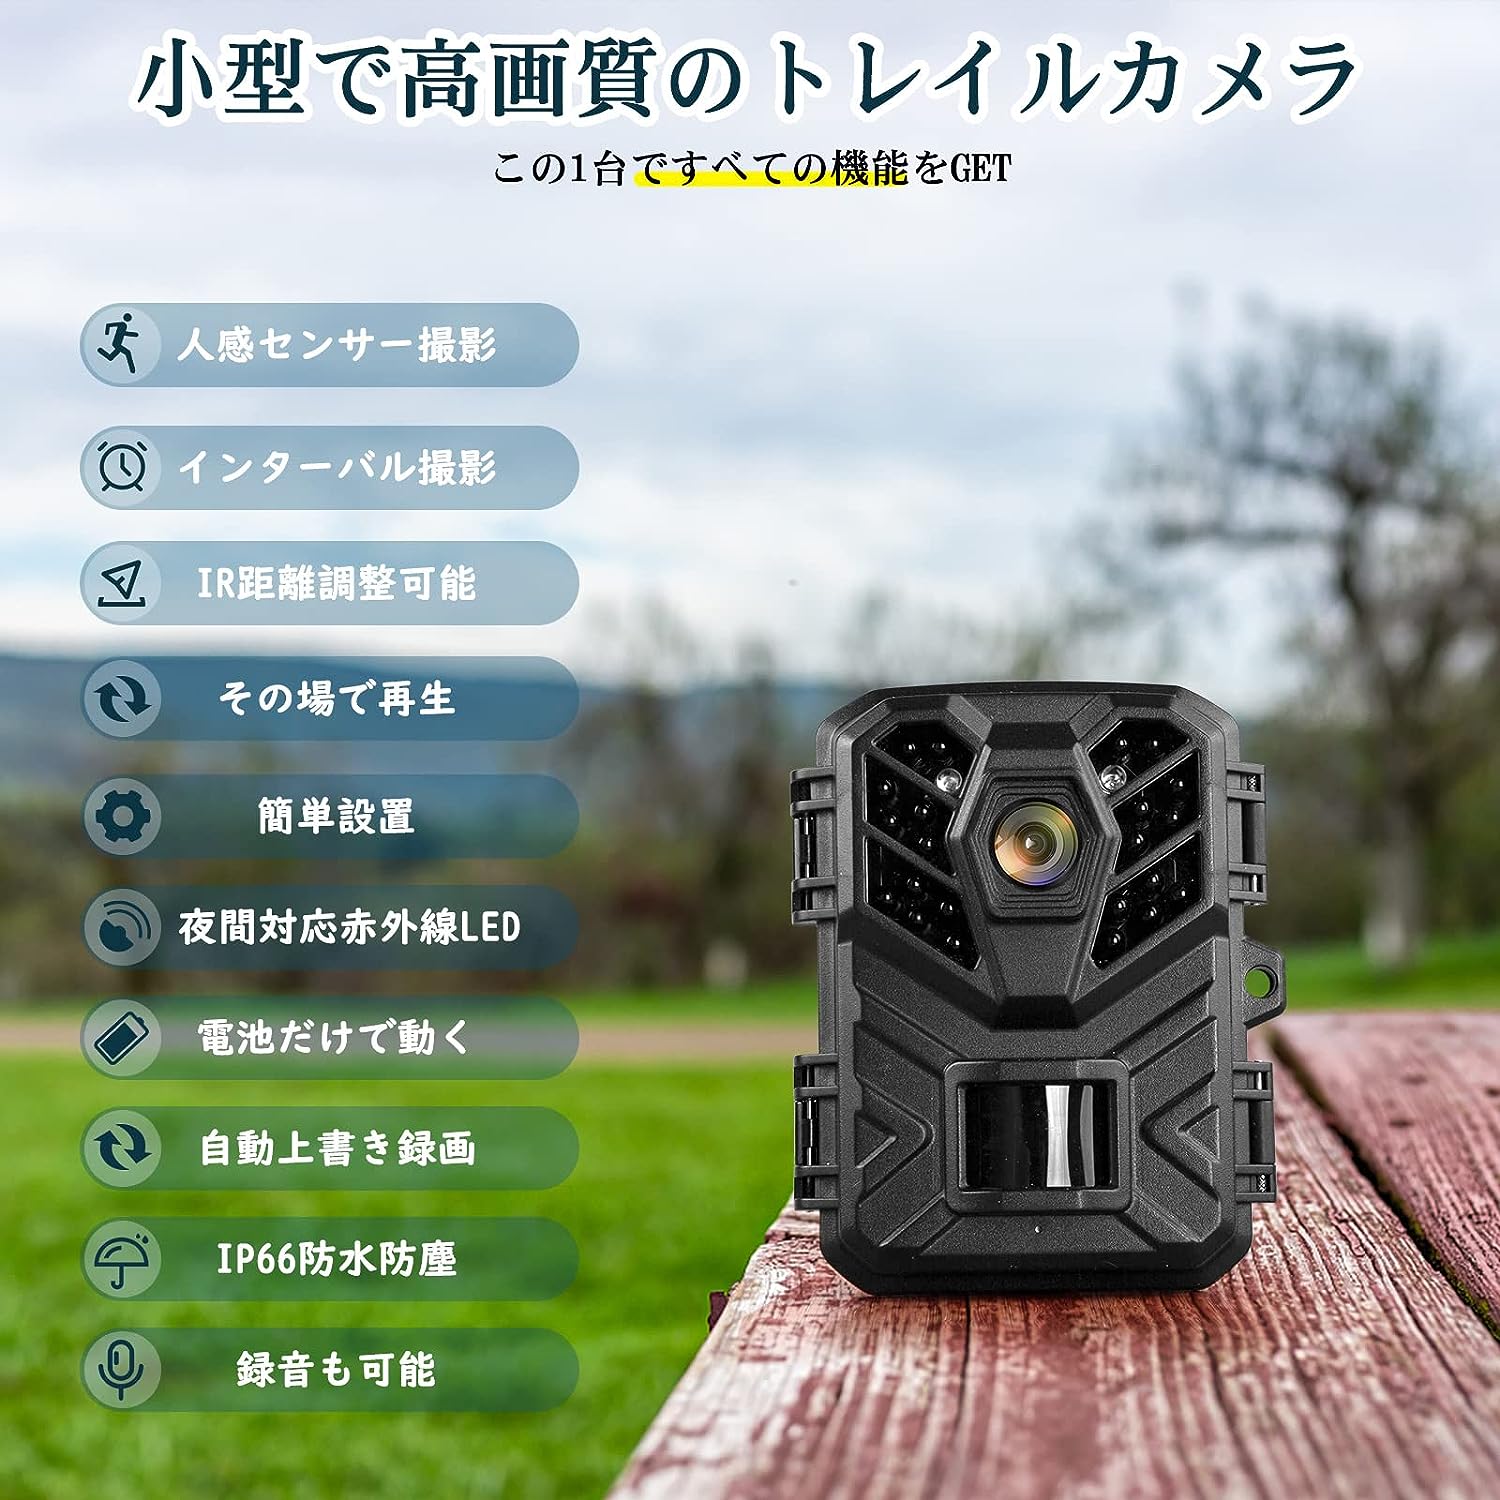 トレイルカメラ 赤外線 人体感知 センサー搭載 防水 防犯カメラ ビデオレコーダ